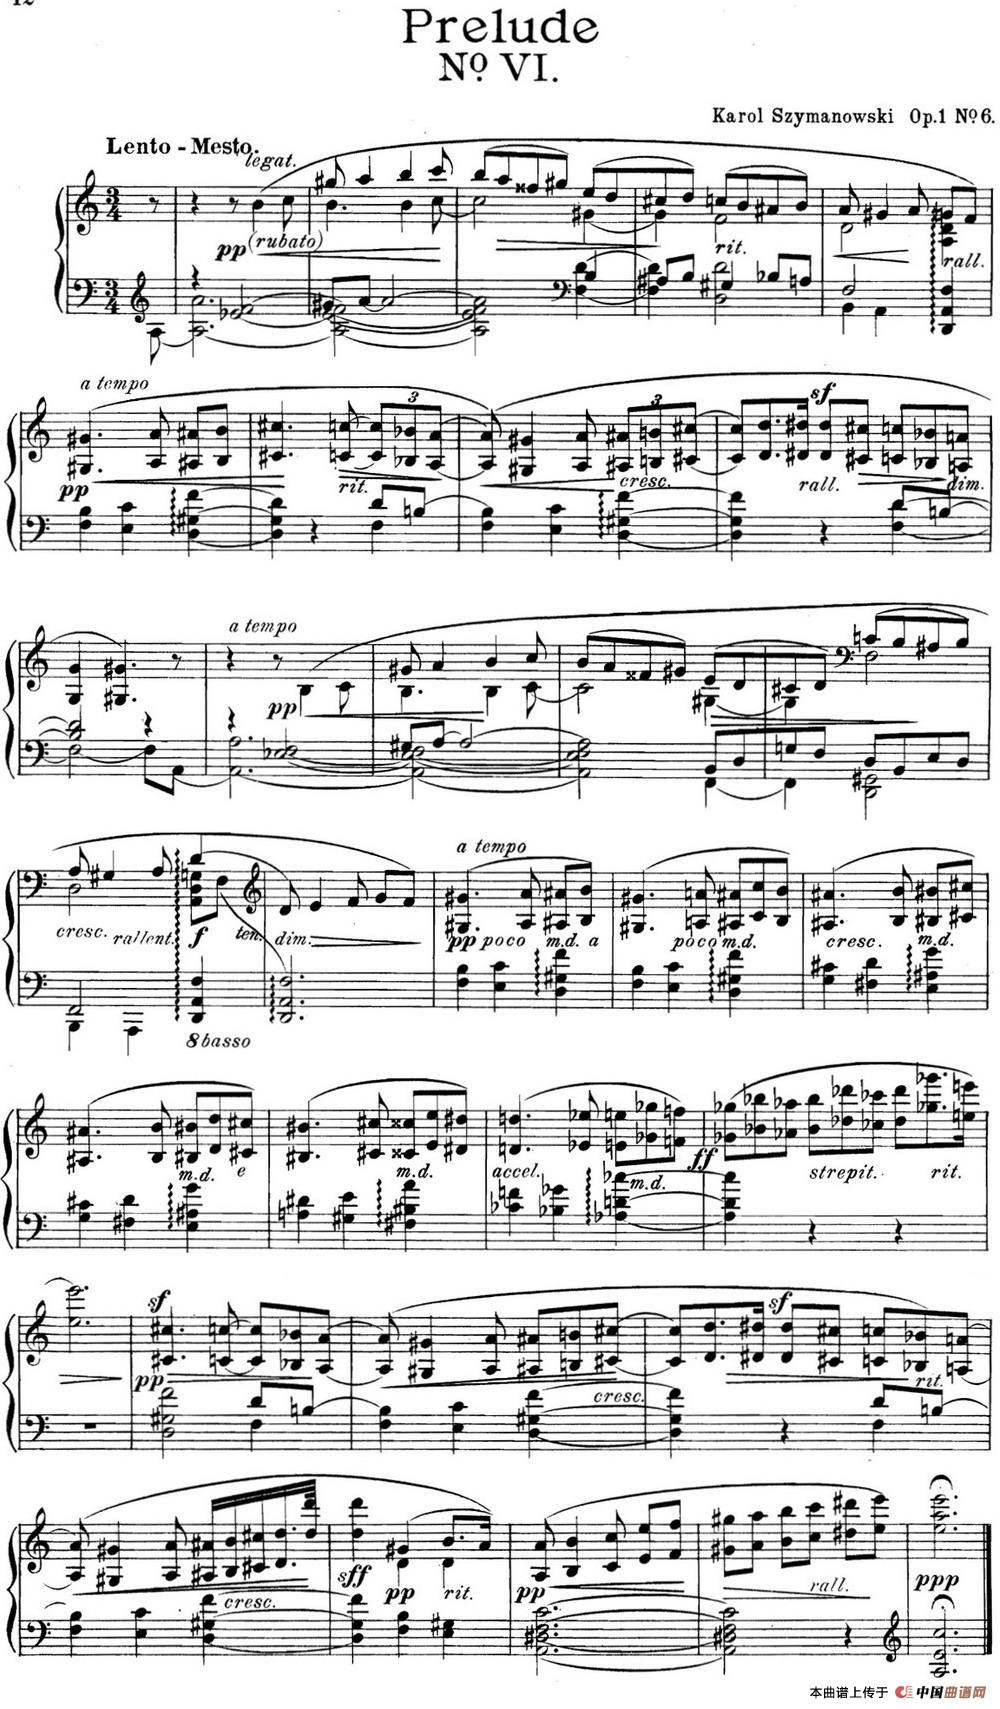 《希曼诺夫斯基 9首钢琴前奏曲 Op.1 No.6》钢琴曲谱图分享